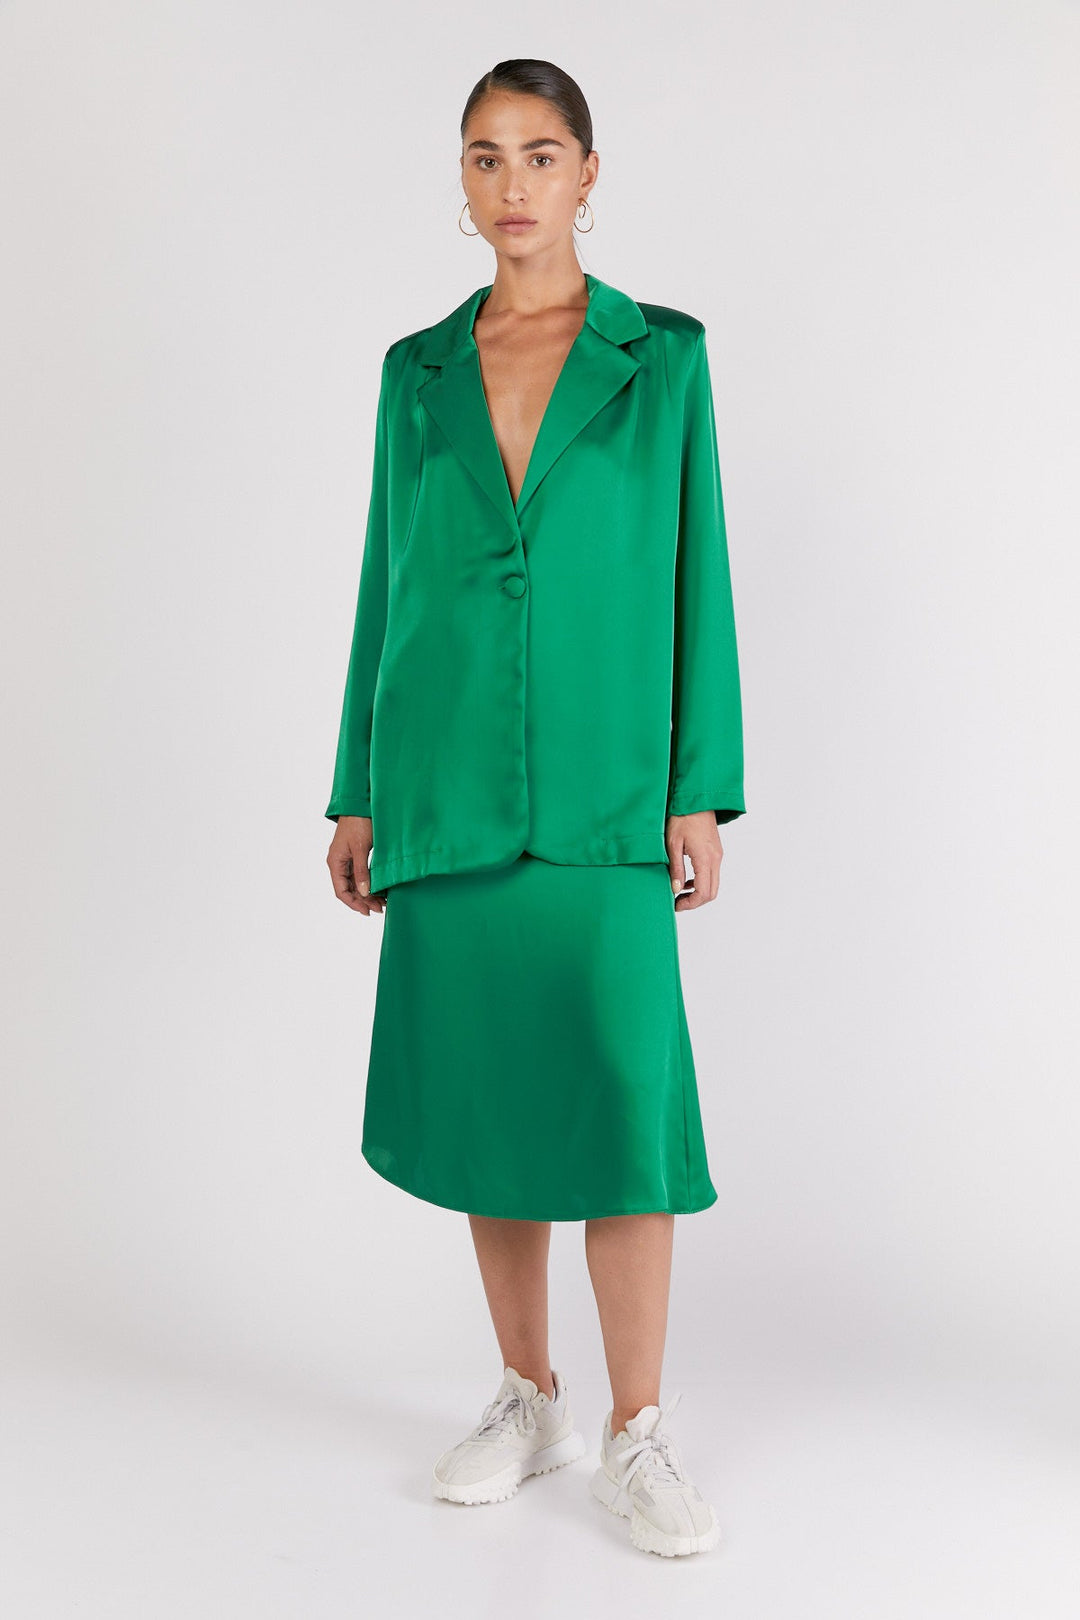 חצאית אלכס בצבע ירוק - Dana Sidi